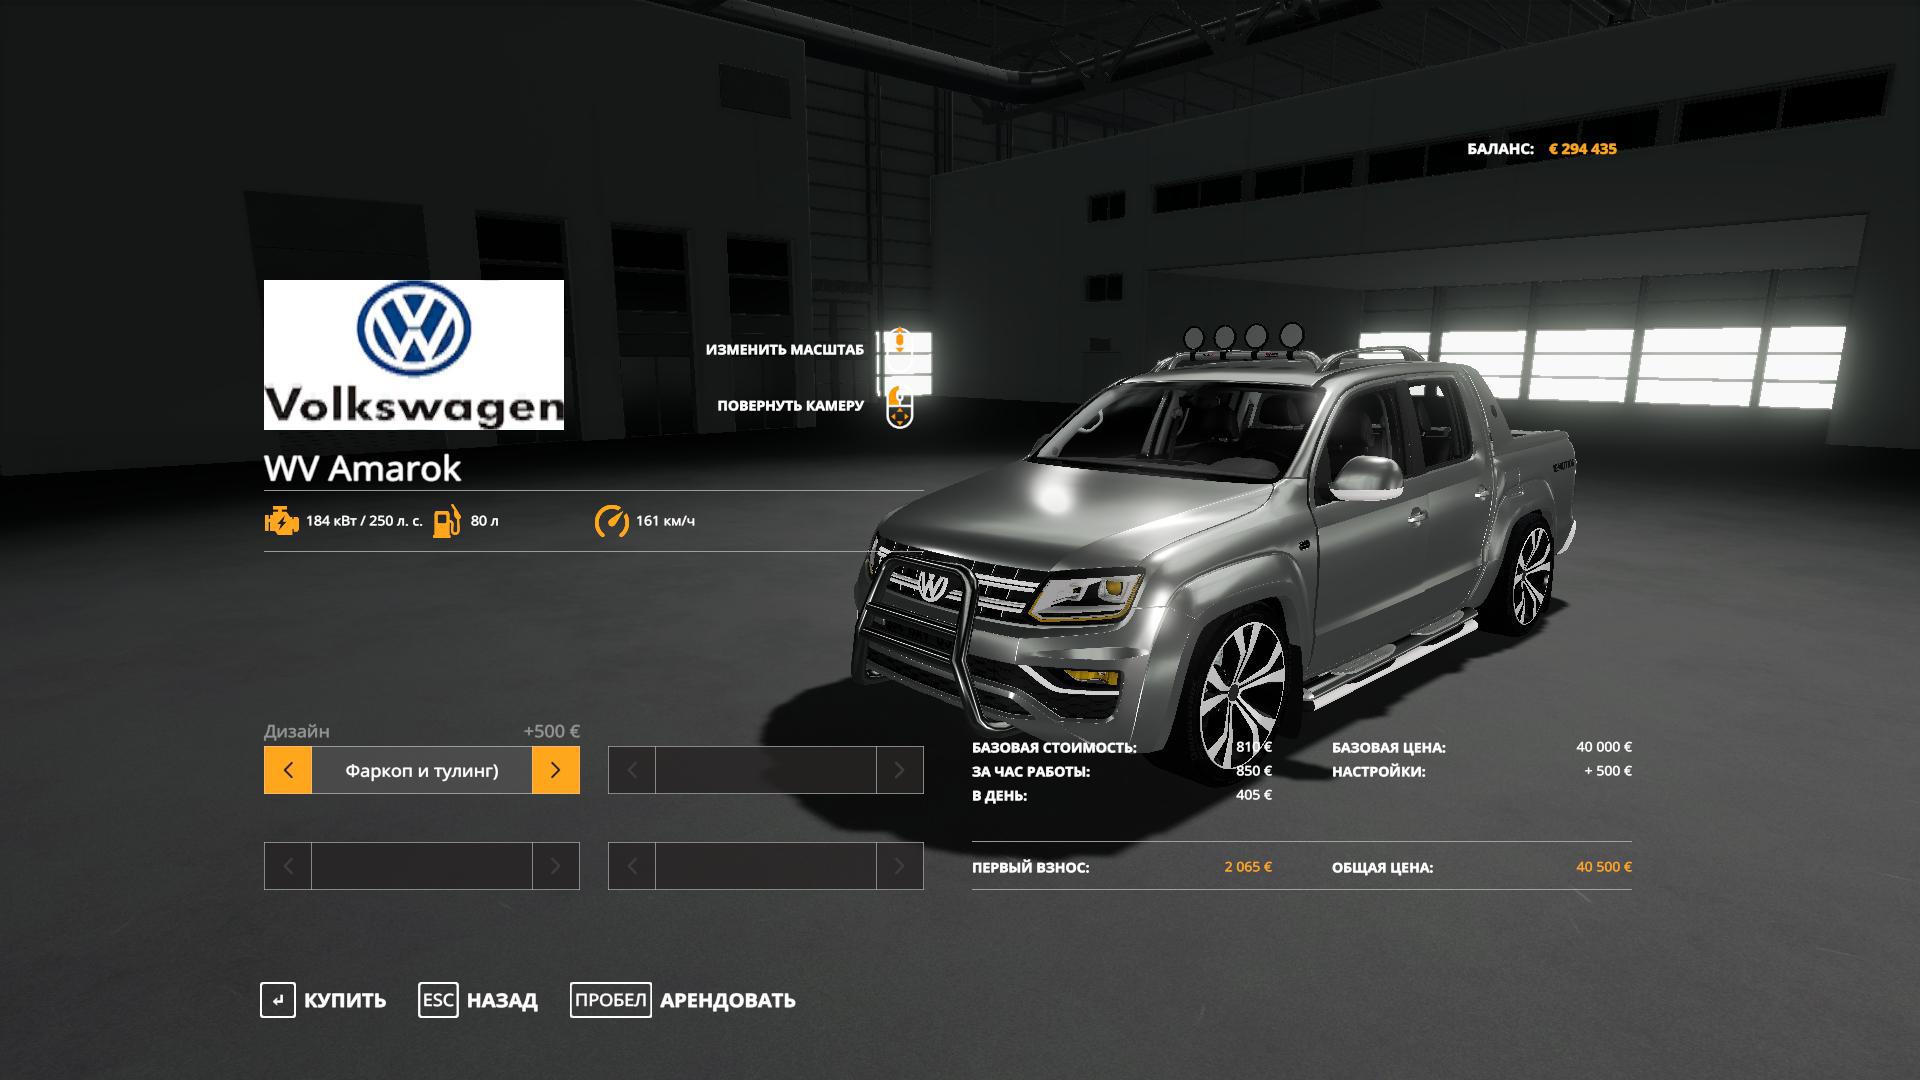 Car Volkswagen Amarok v2.0 Farming Simulator 19 mod